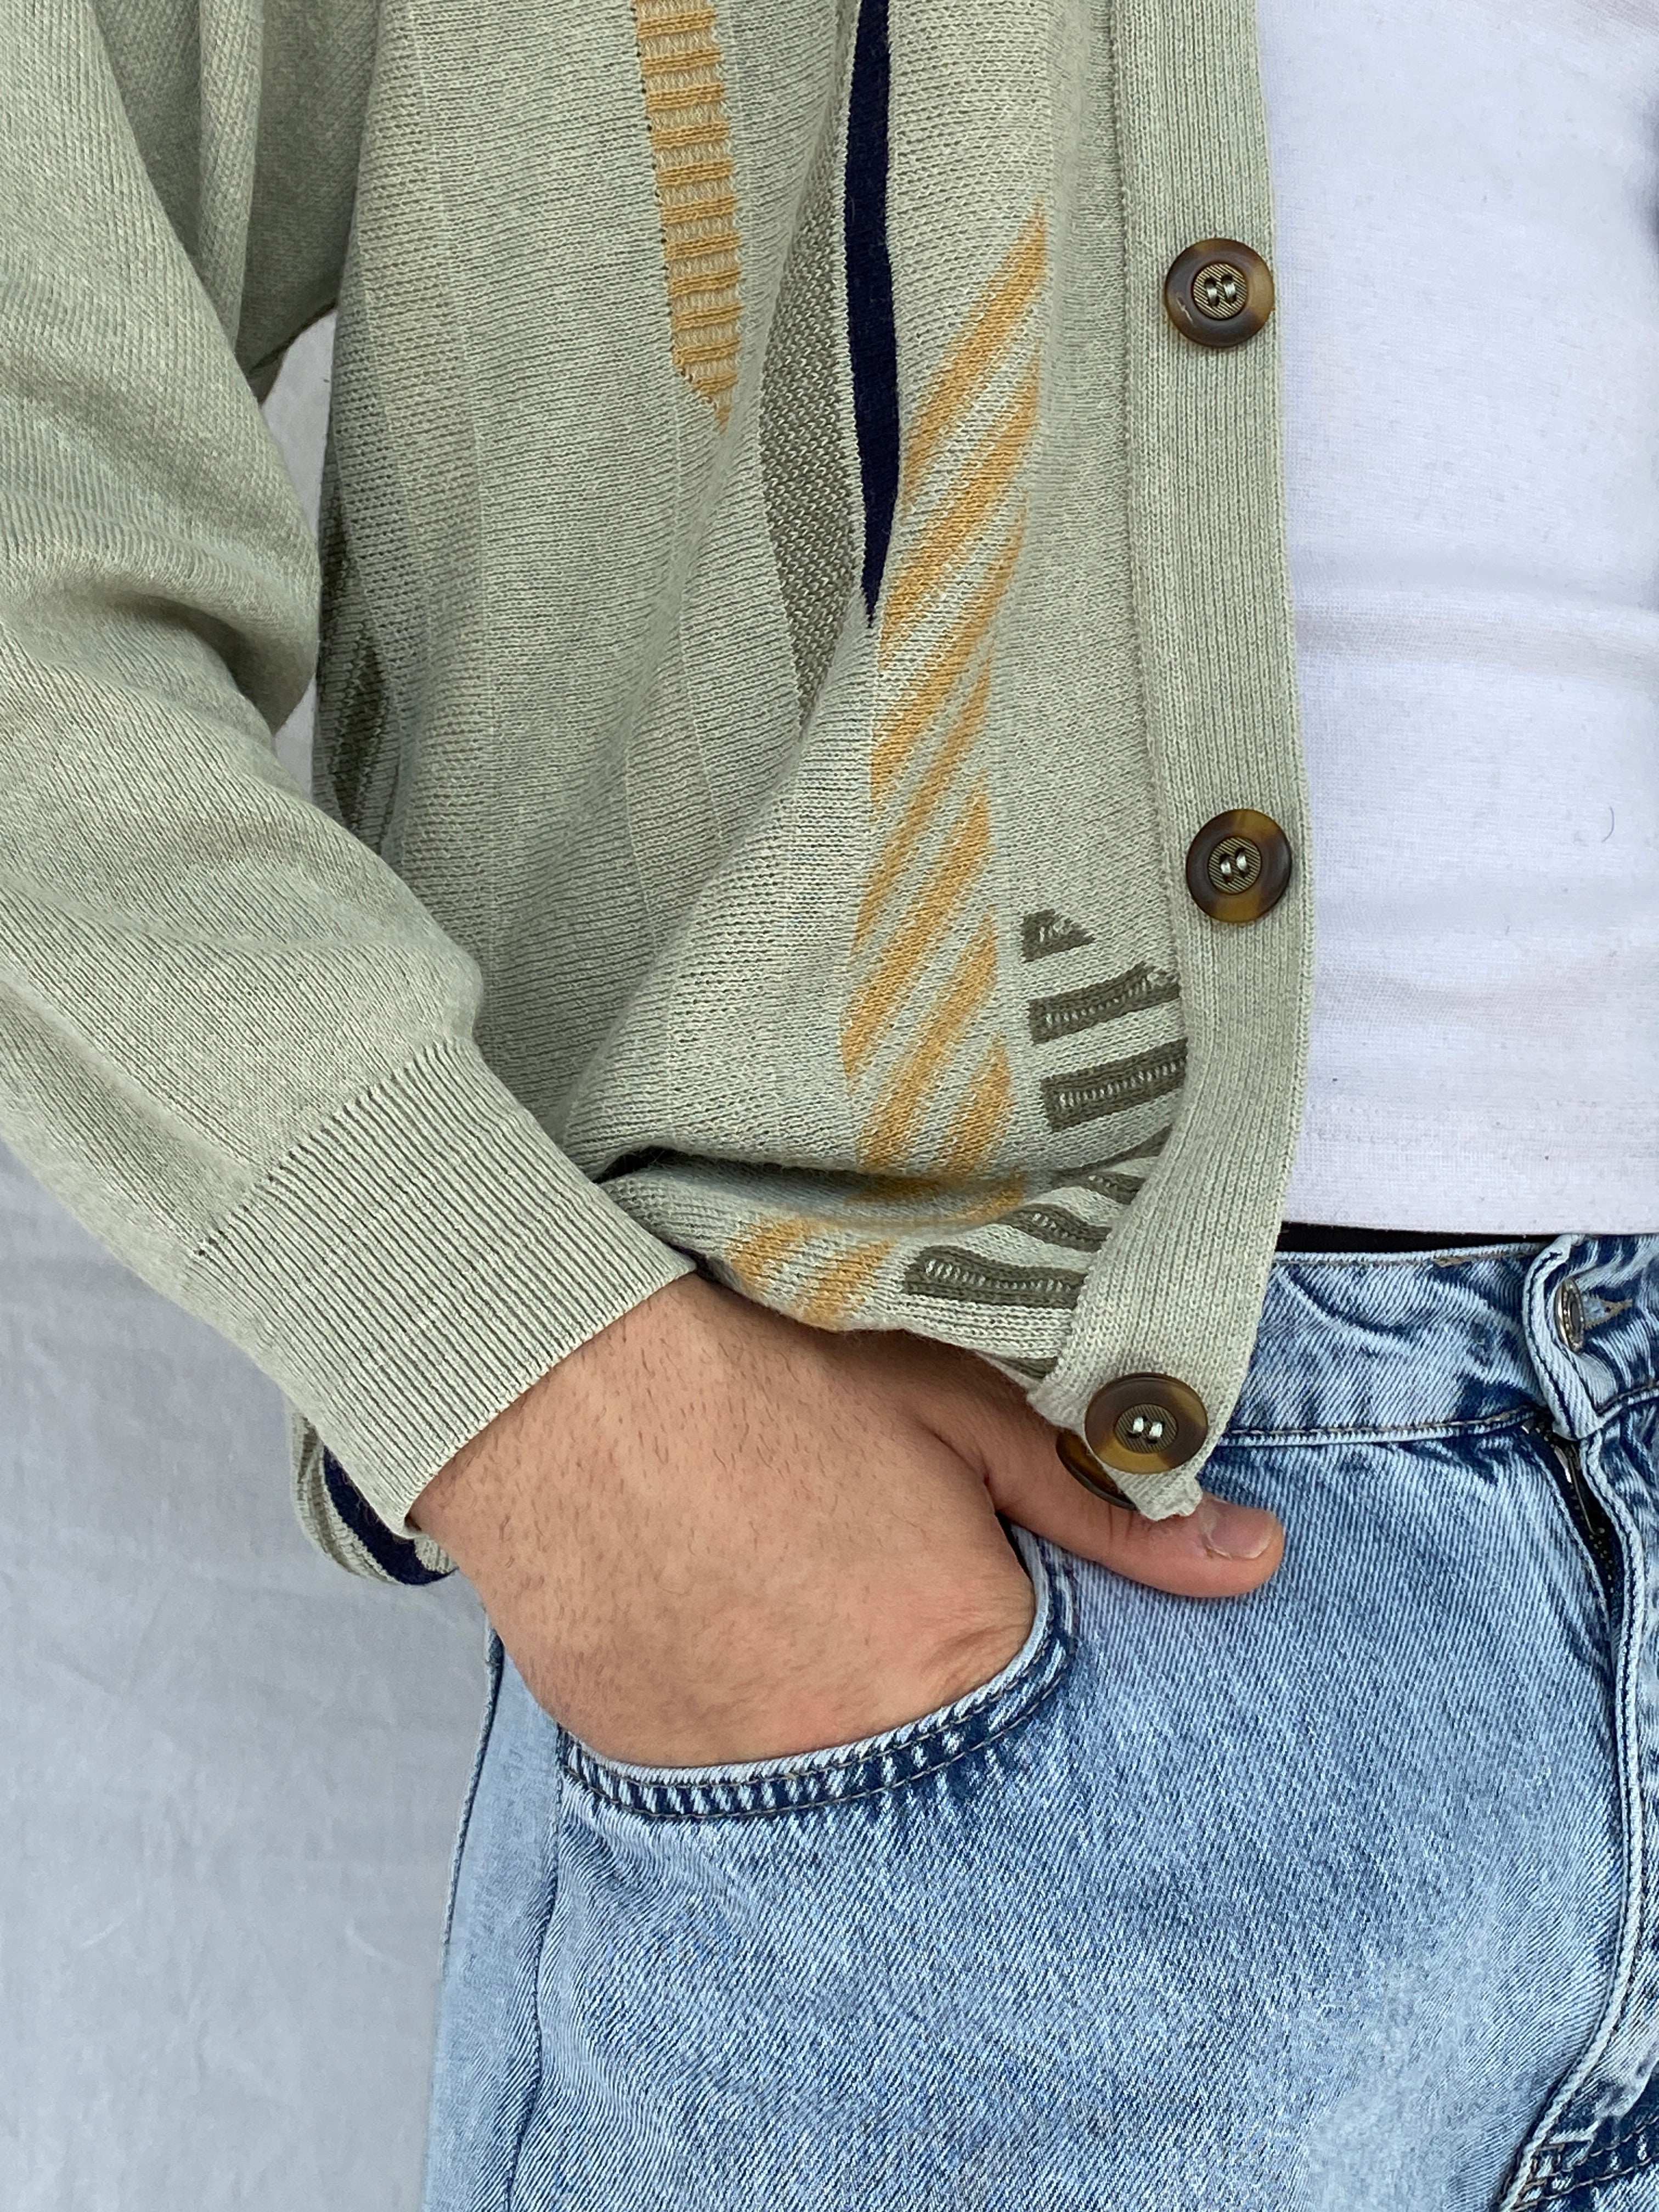 Vintage Knitted Cardigan - Size Large - Balagan Vintage Cardigan 90s, Abdullah, cardigan, winter